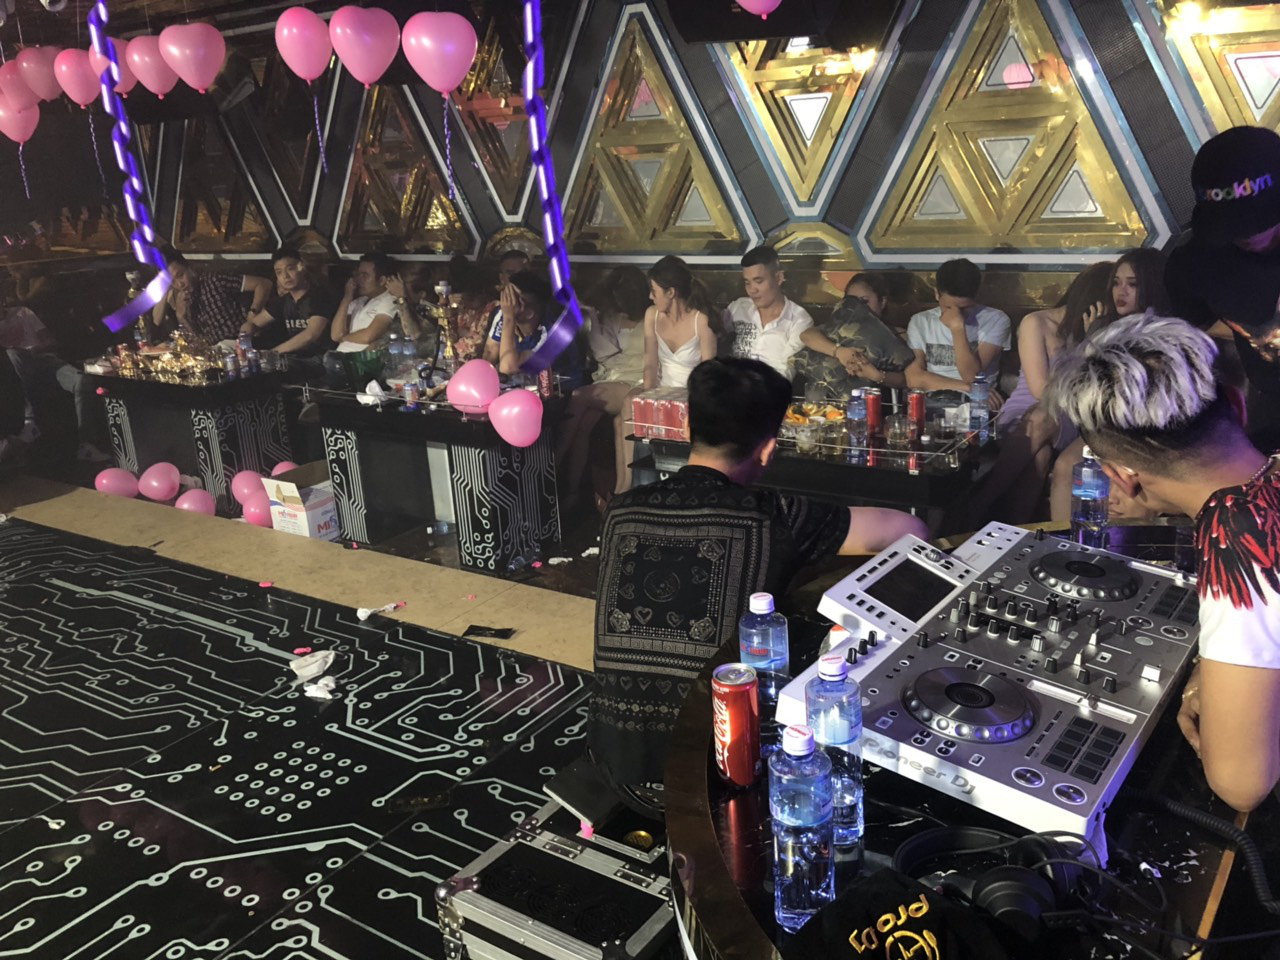 Gần 90 dân chơi dương tính với ma tuý trong quán karaoke ở Sài Gòn - Ảnh 2.